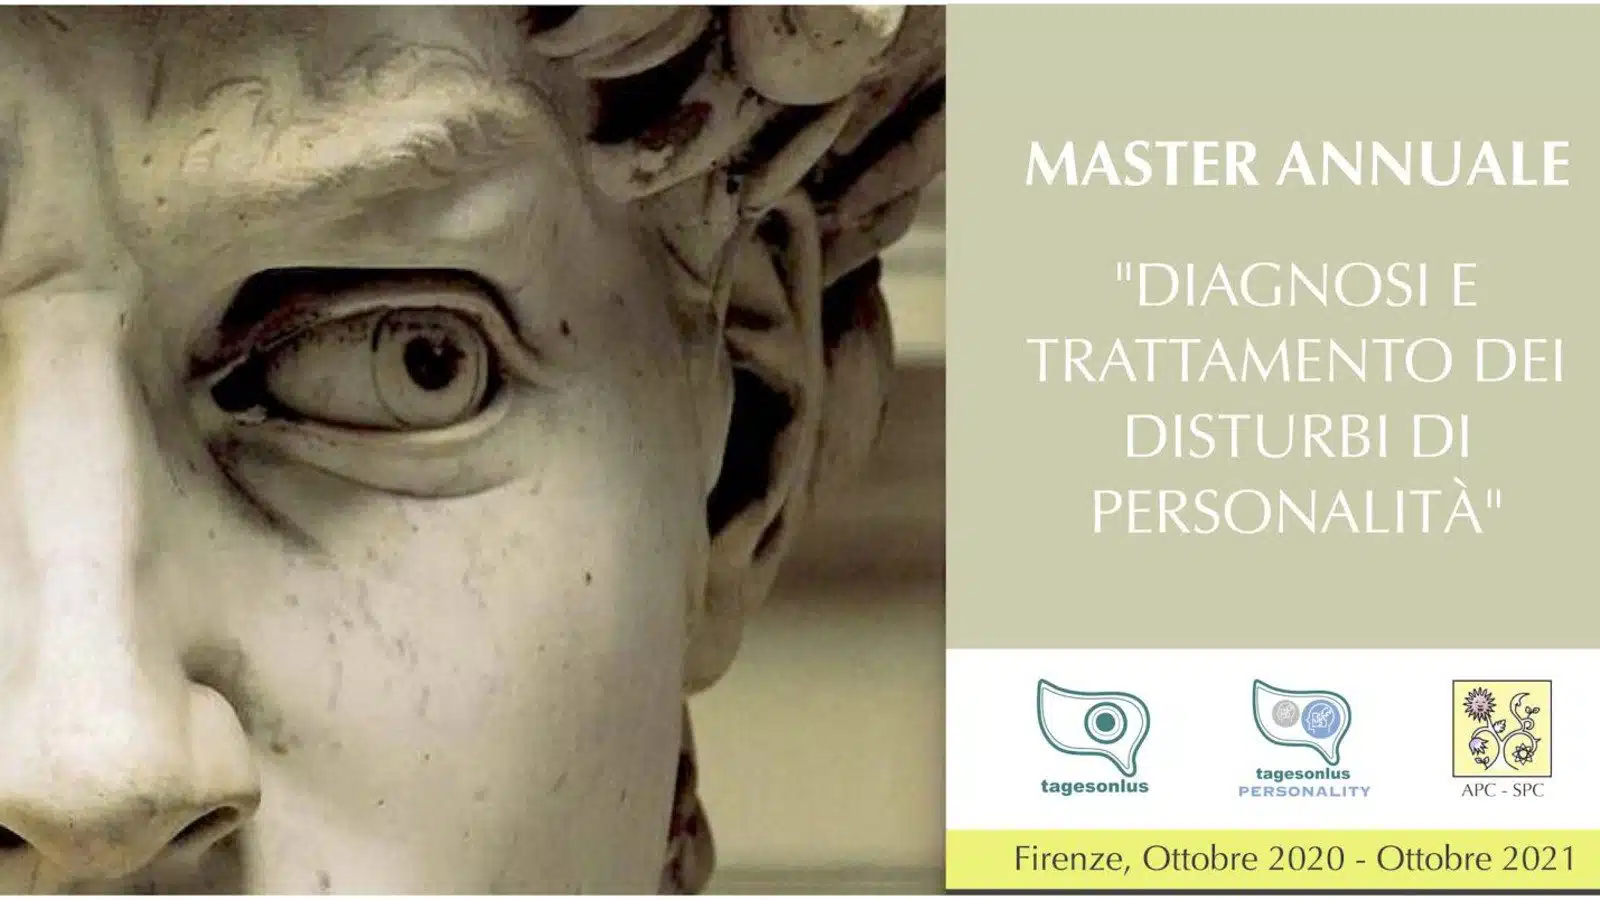 Diagnosi e trattamento dei disturbi di personalita - Master annuale Firenze